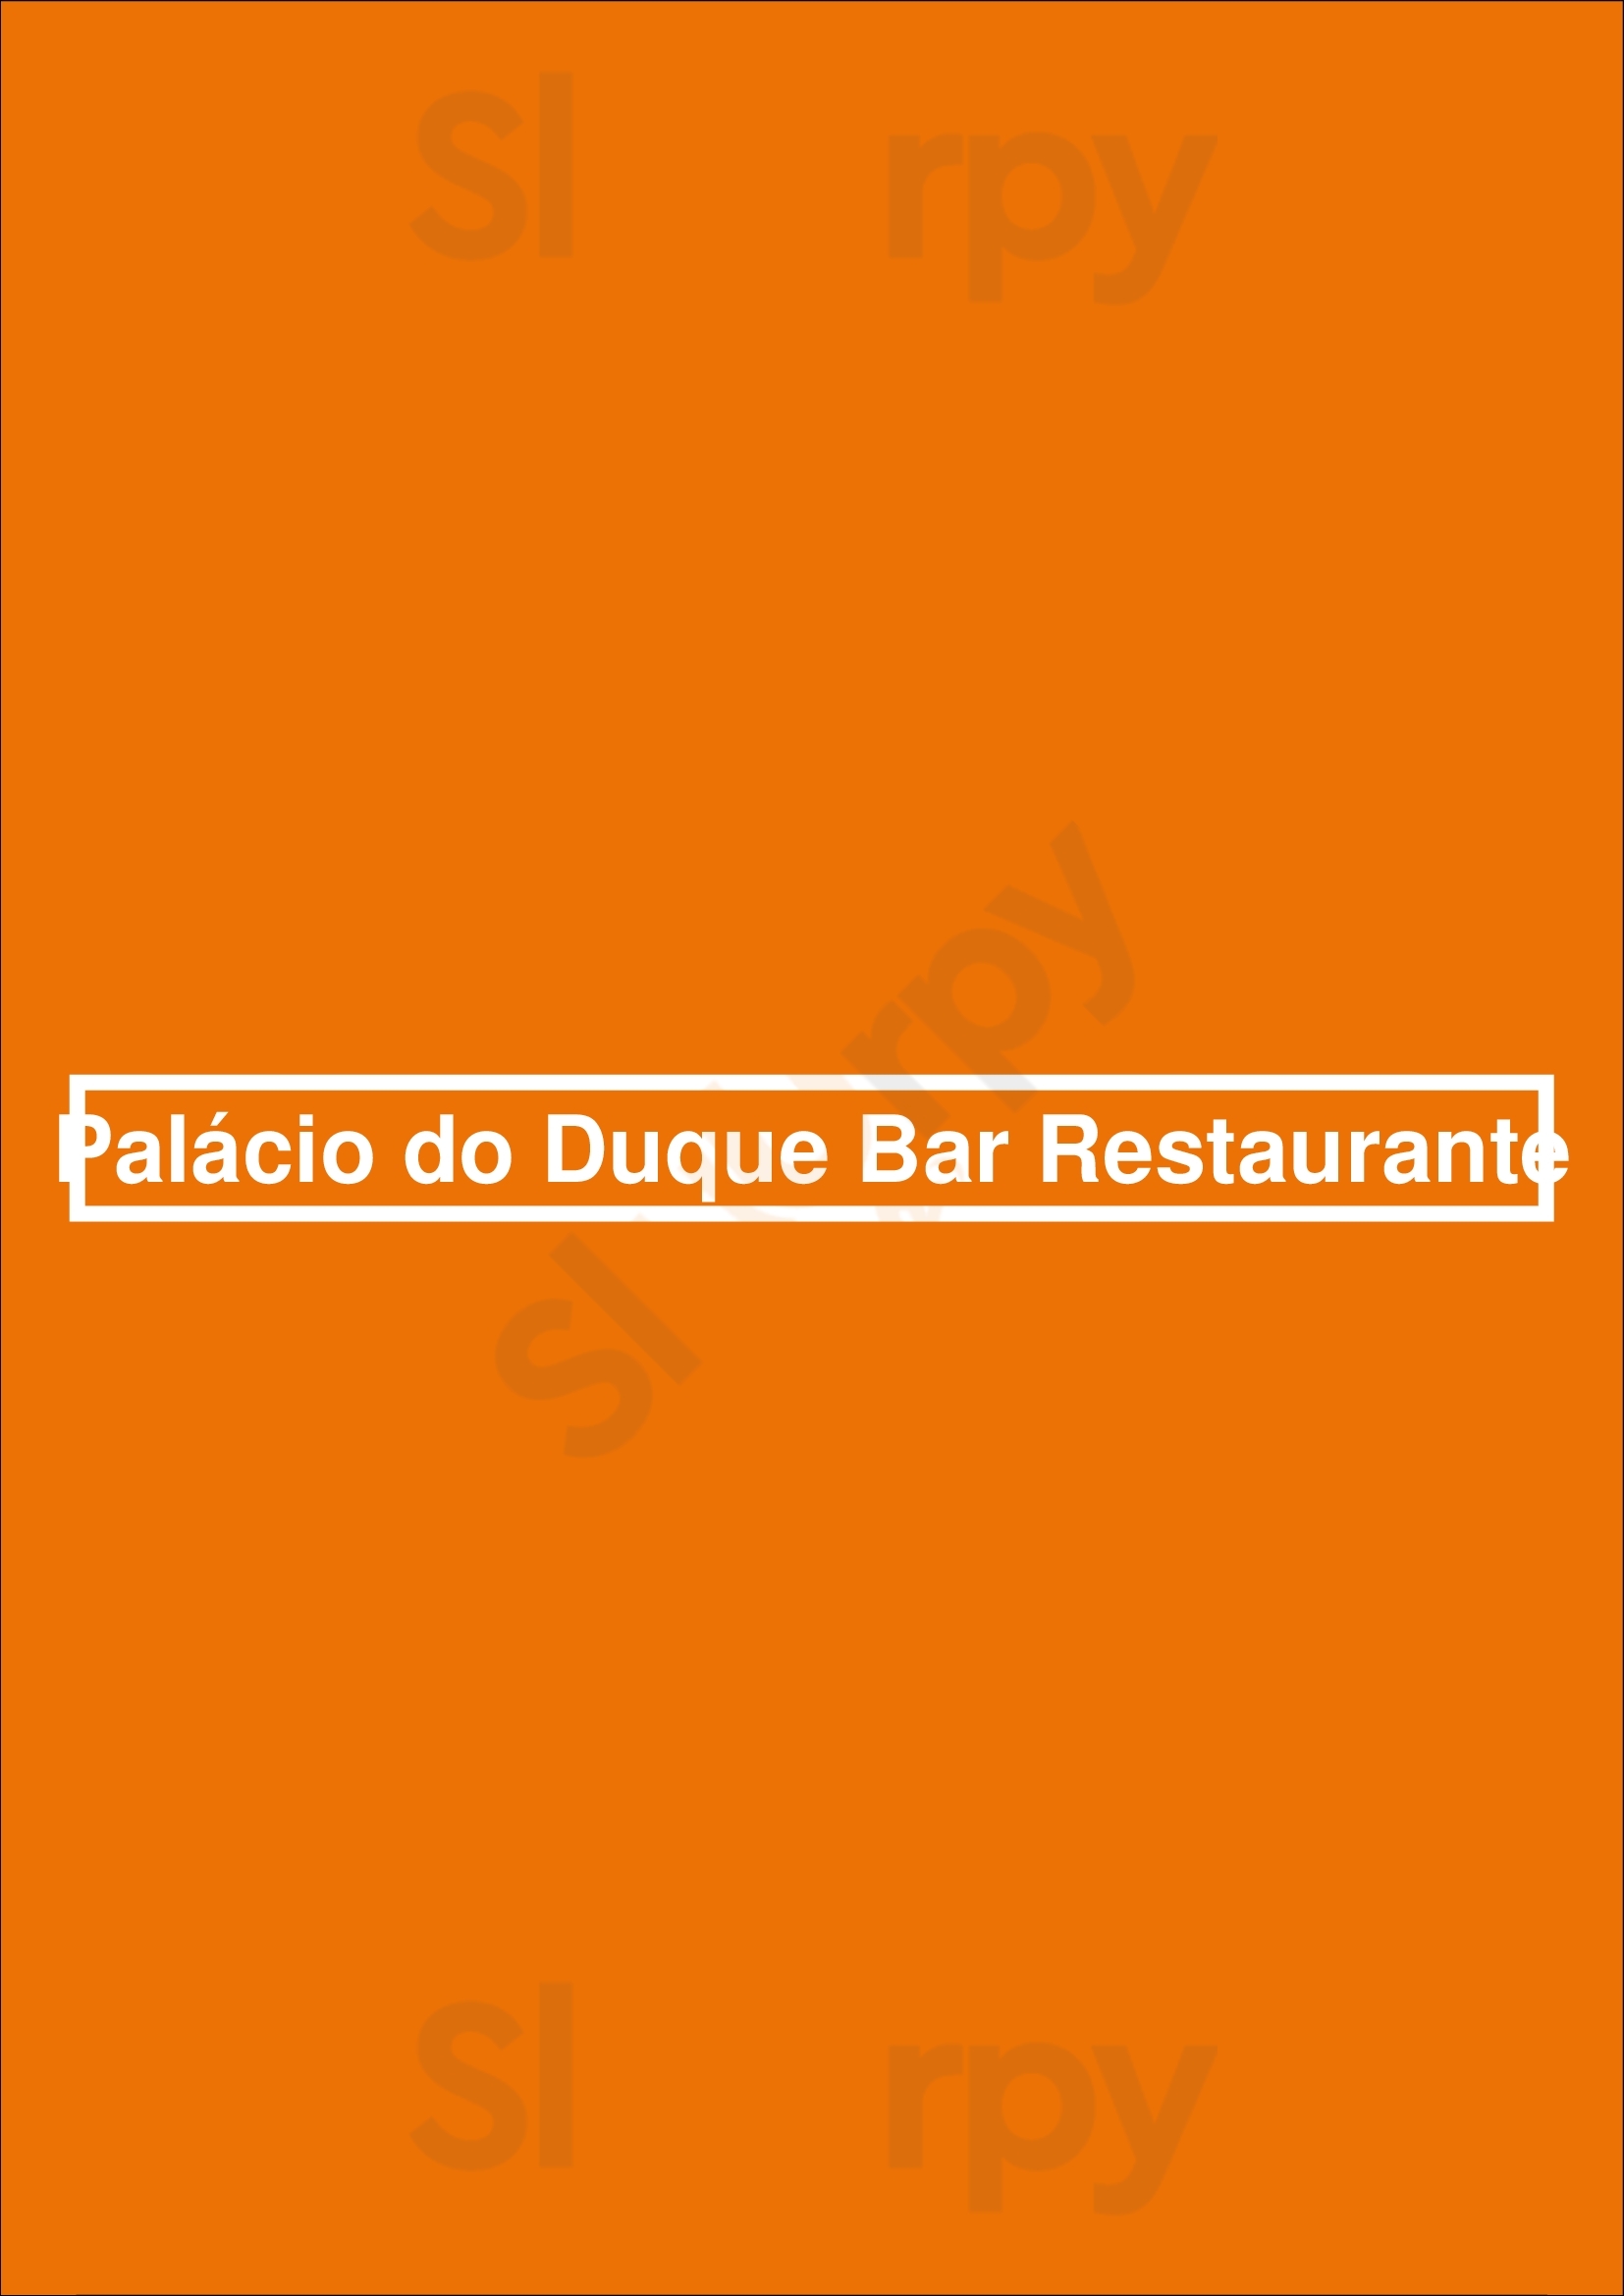 Palácio Do Duque Bar Restaurante Lisboa Menu - 1